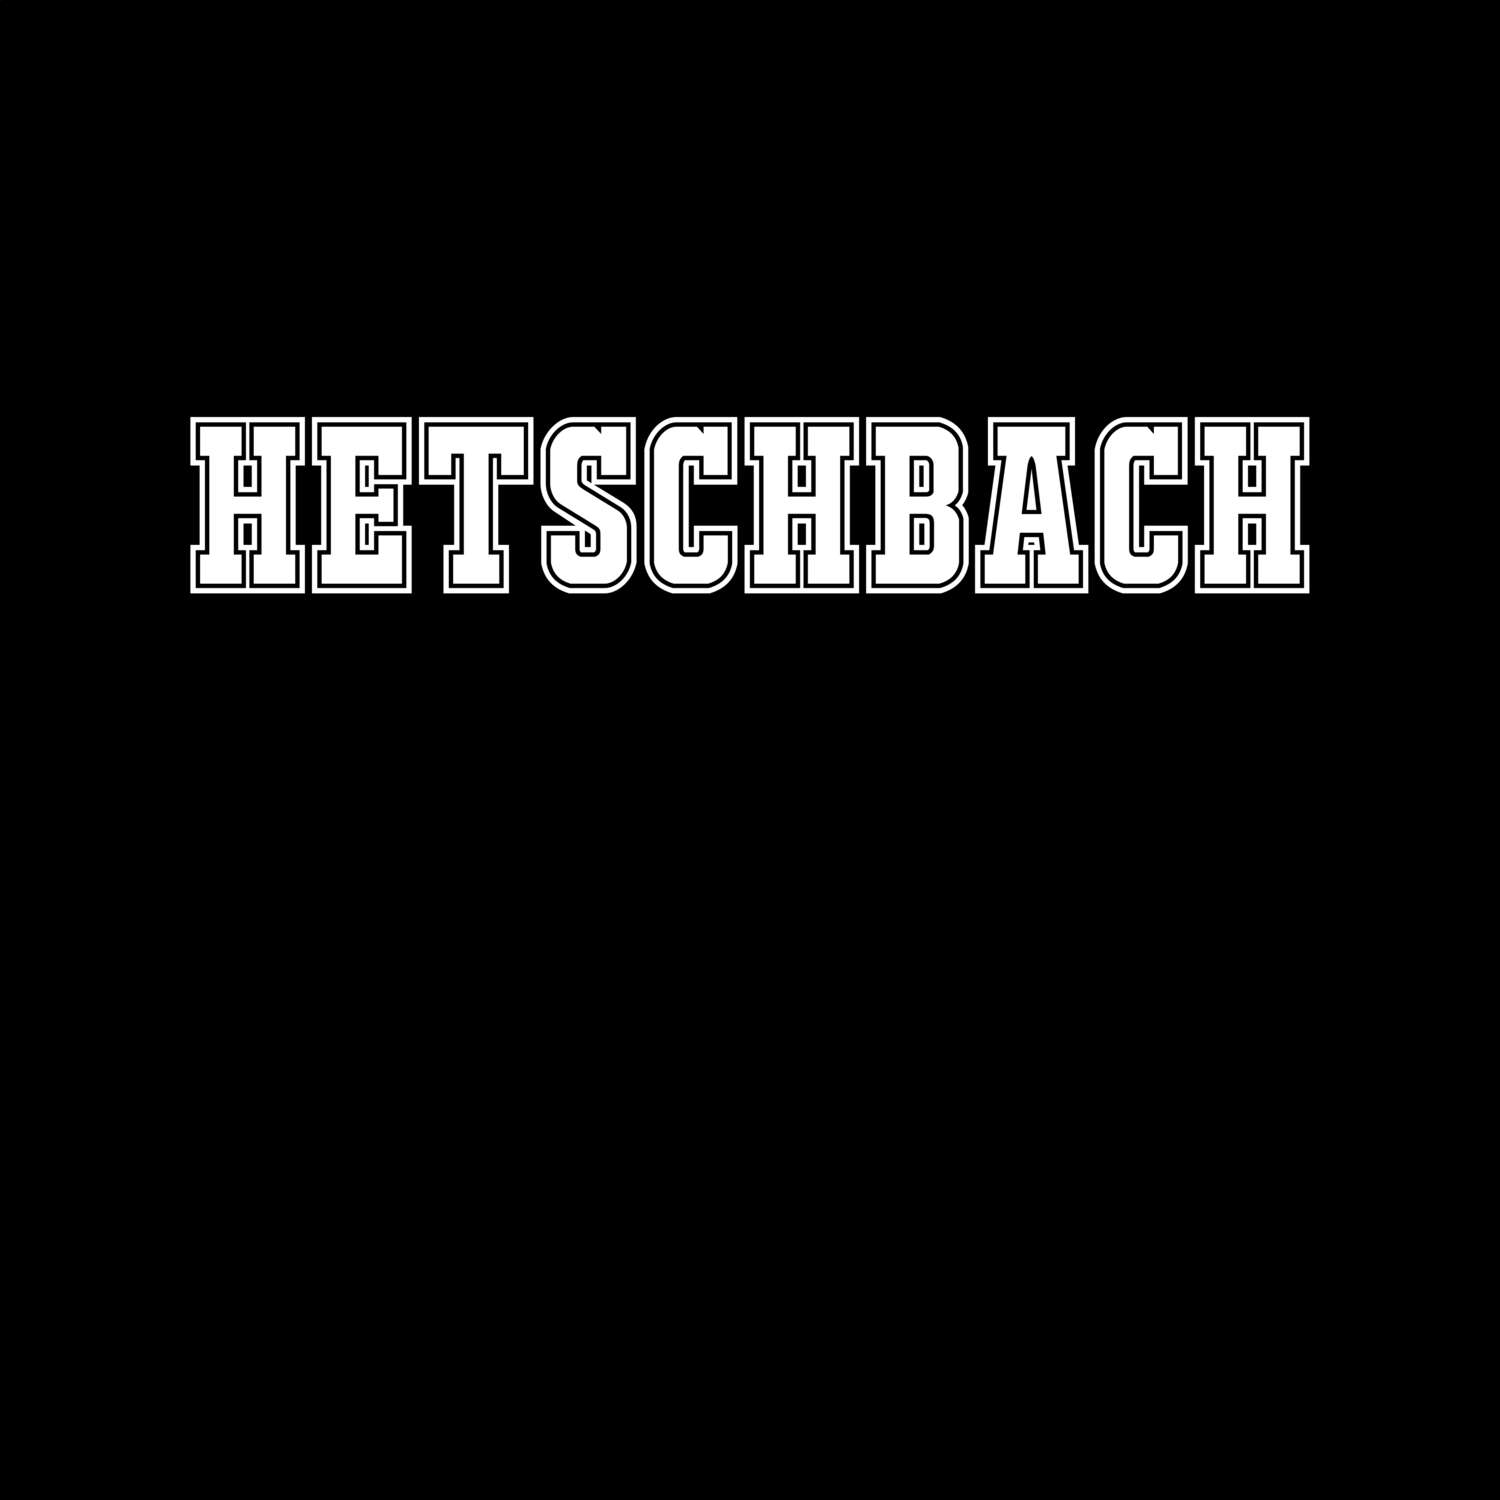 Hetschbach T-Shirt »Classic«